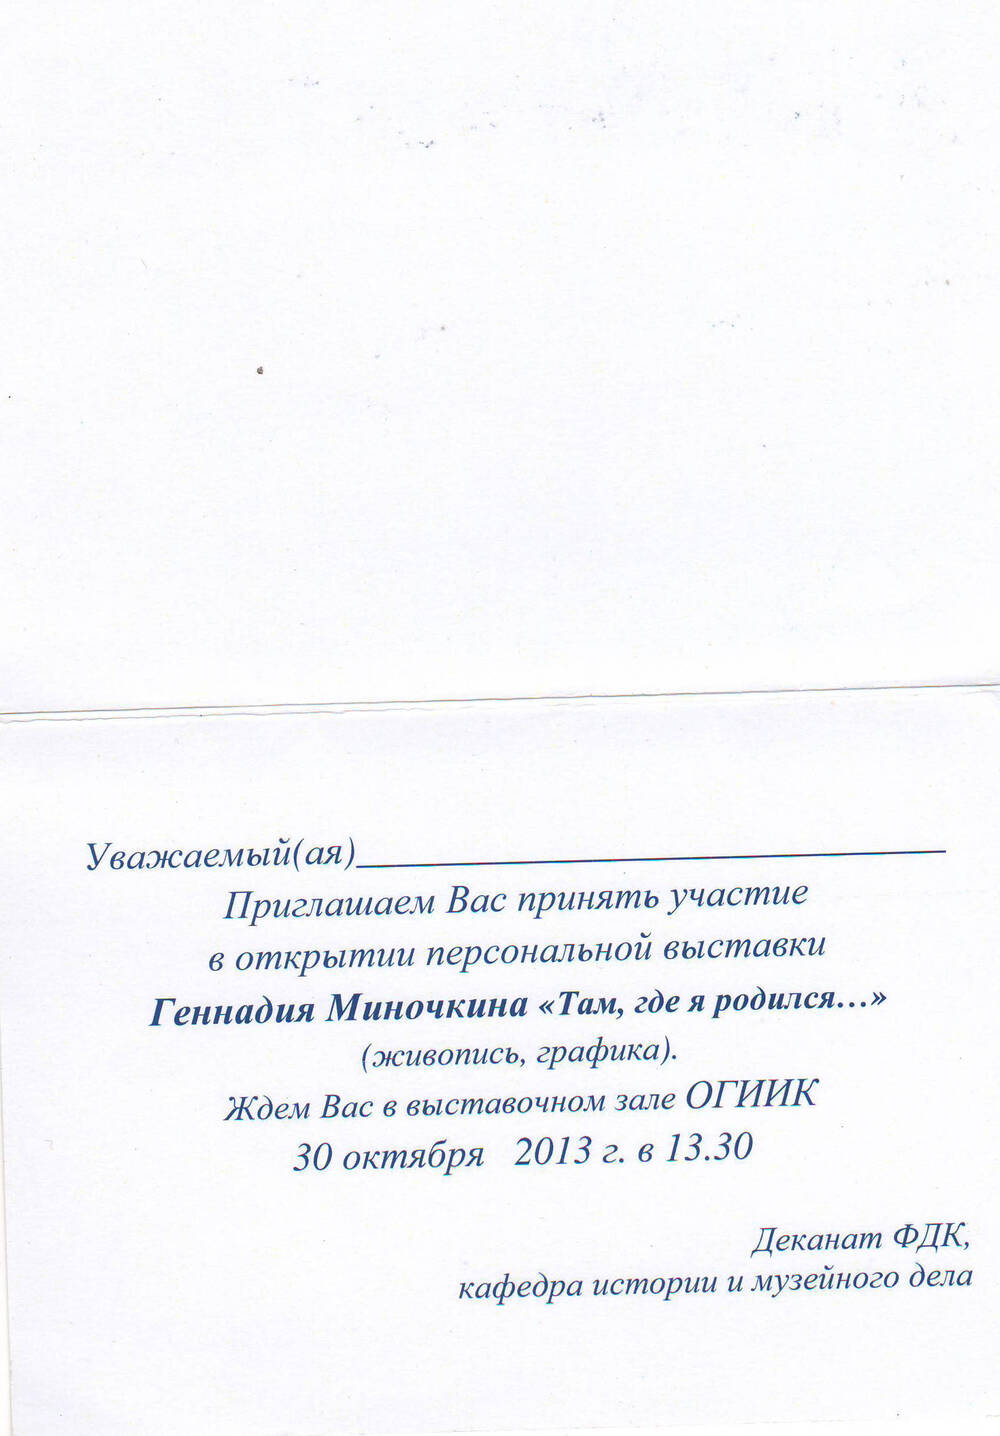 Приглашение на персональную выставку Геннадия Миночкина.